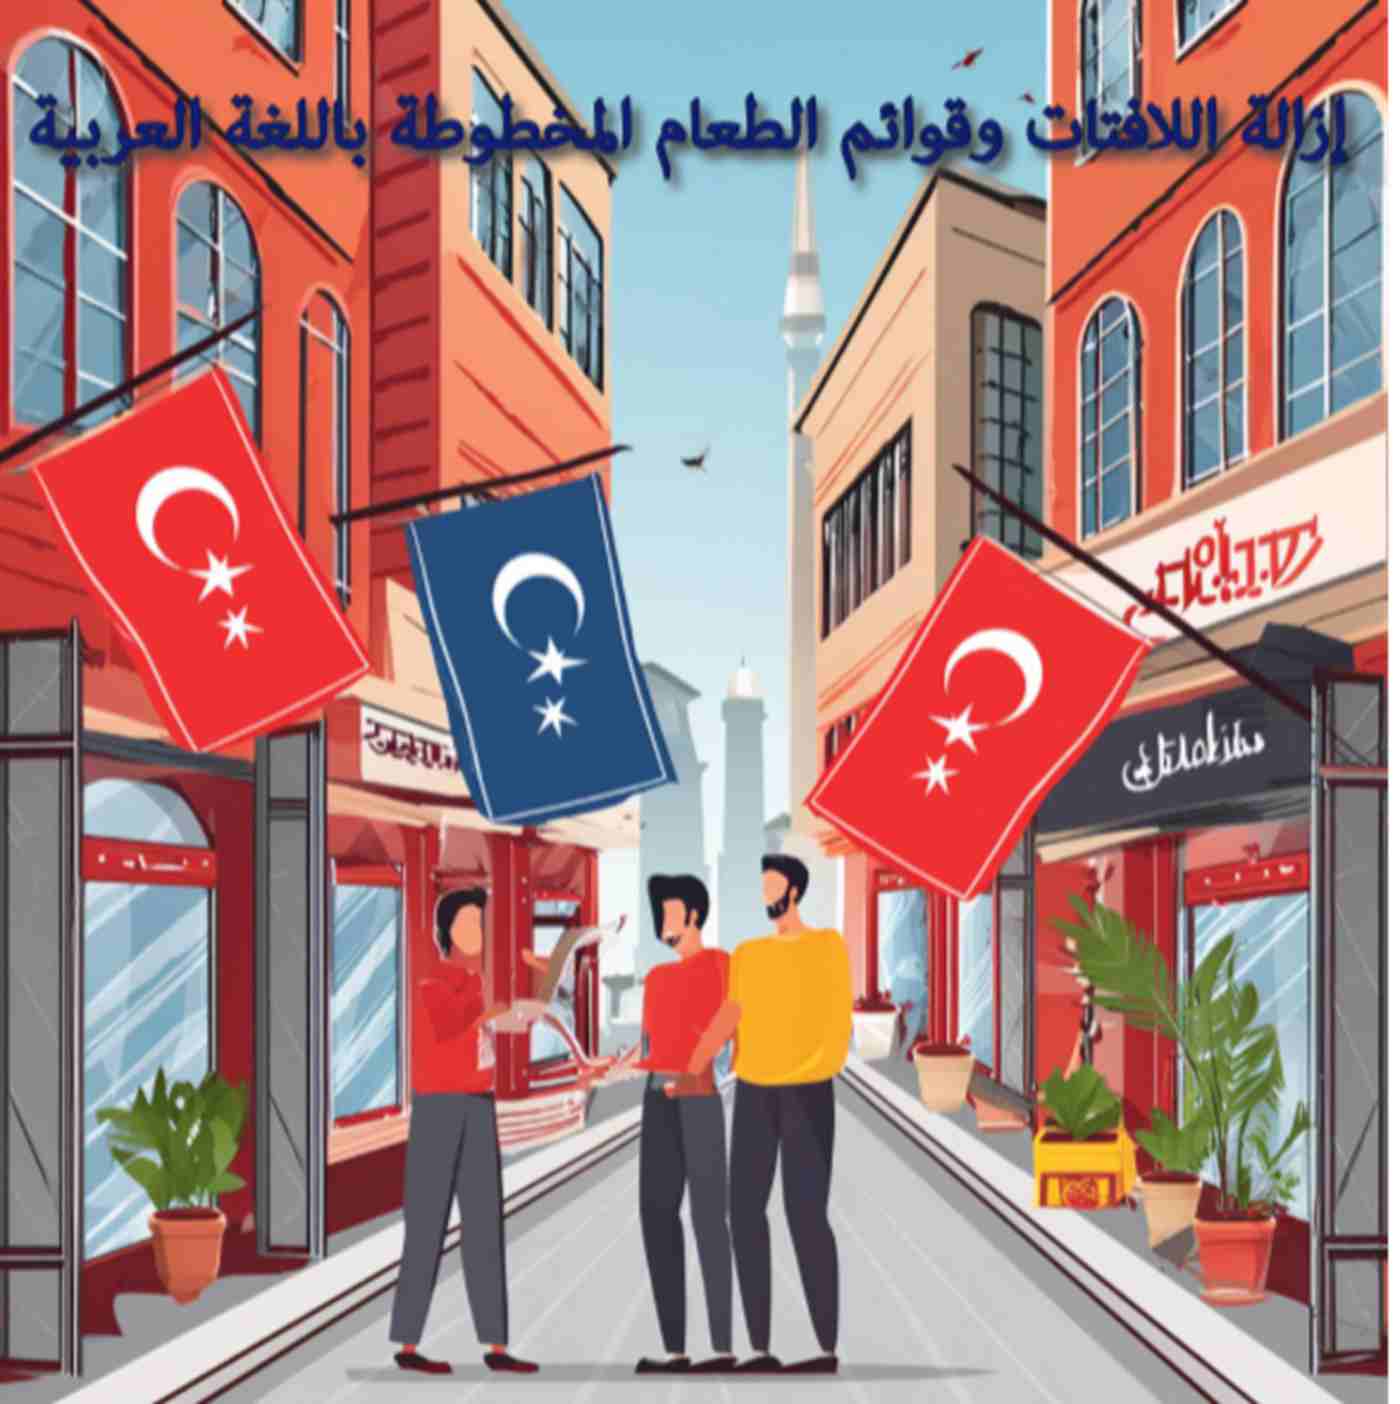 Campagnes controversées en Turquie : retrait des enseignes arabes des commerces